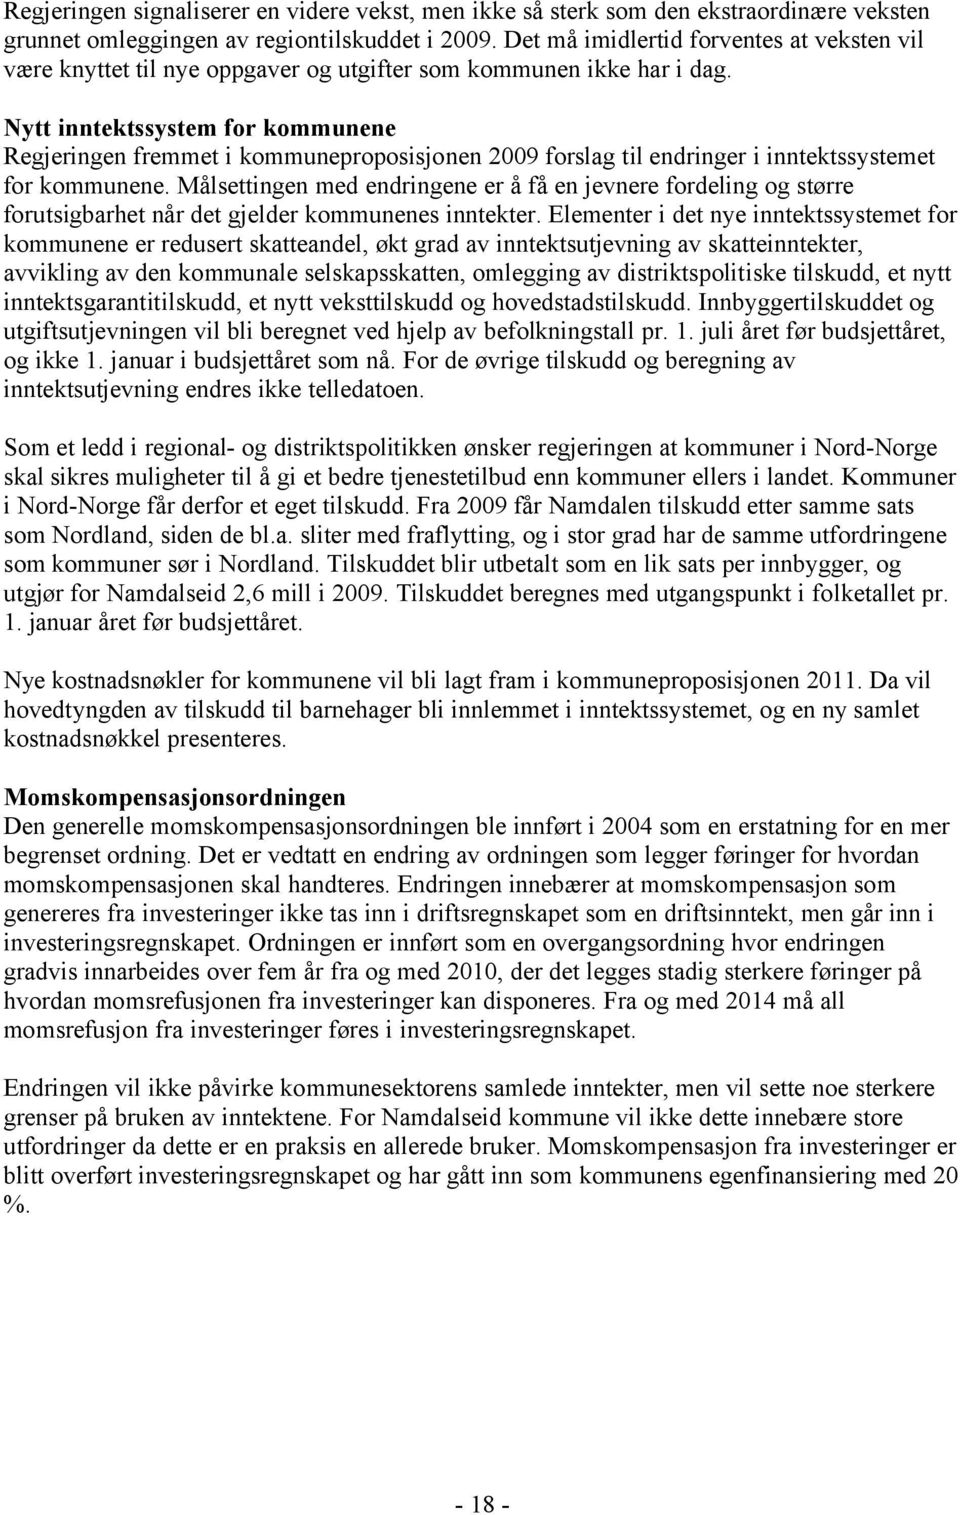 Nytt inntektssystem for kommunene Regjeringen fremmet i kommuneproposisjonen 2009 forslag til endringer i inntektssystemet for kommunene.